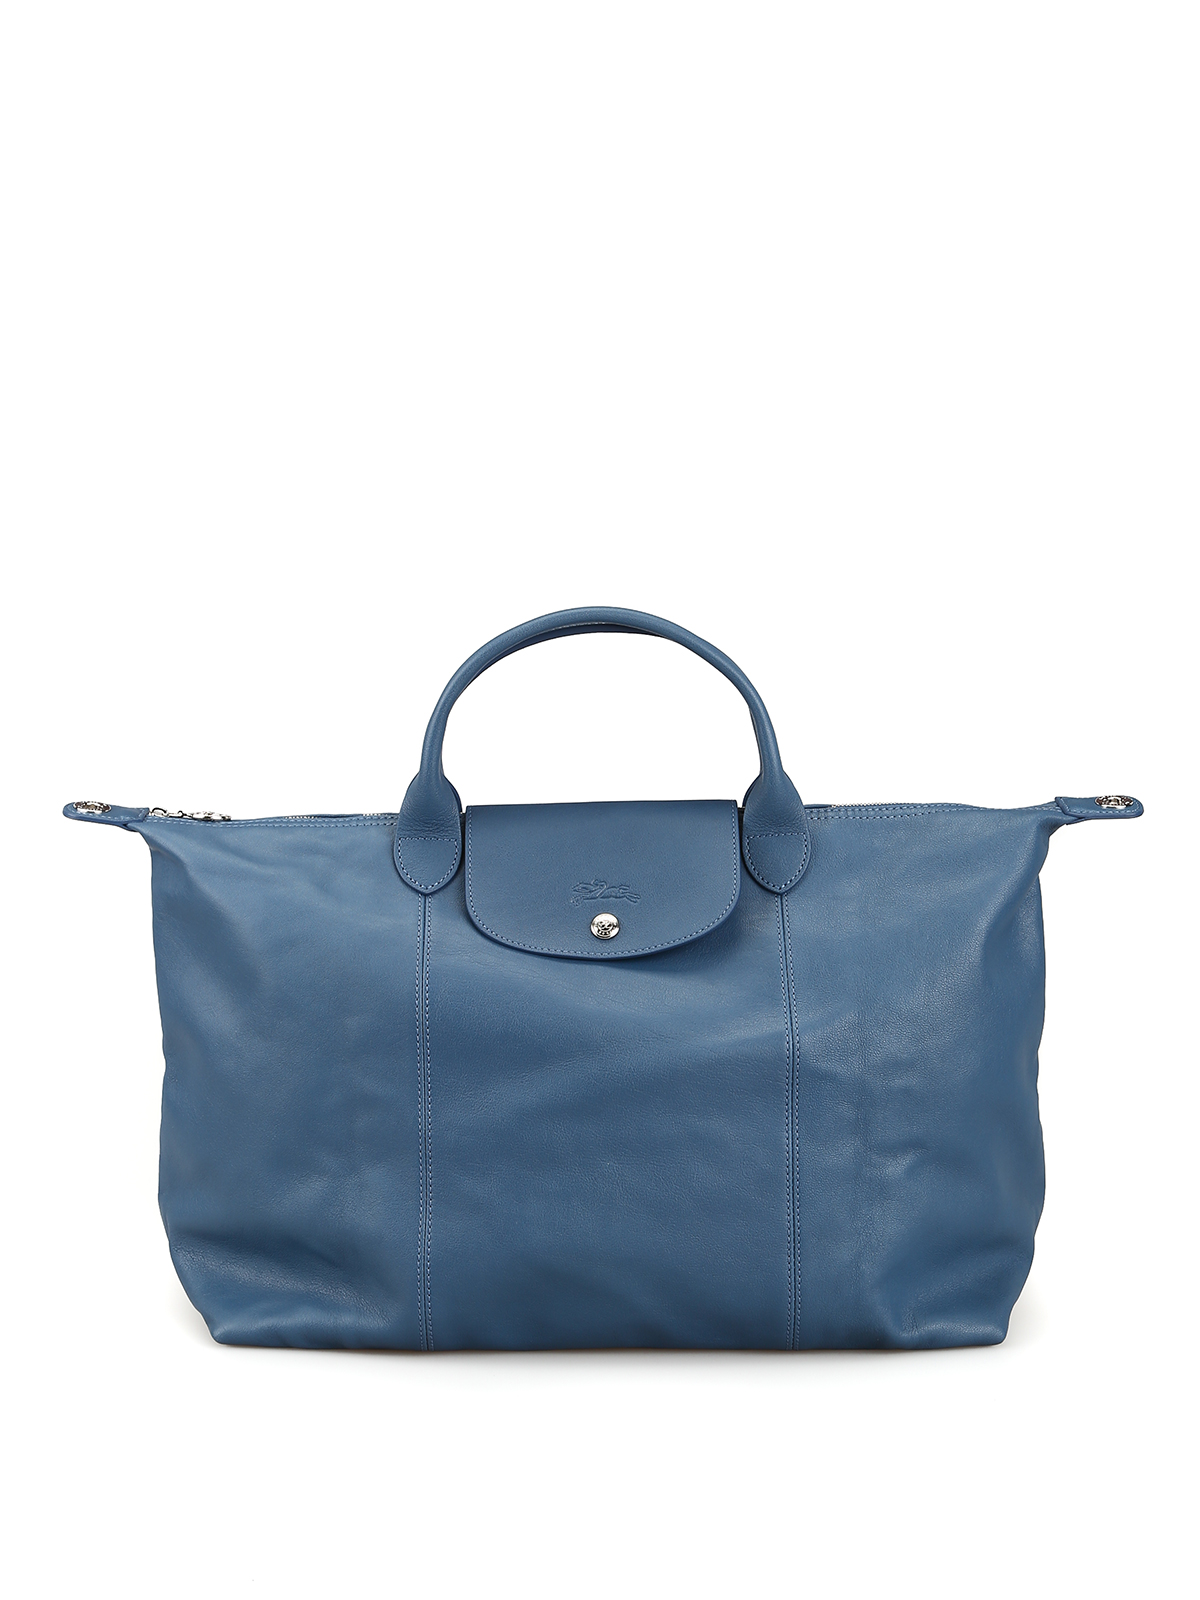 Longchamp, Bags, Longchamp Le Pliage Burgundy Cuir Leather Tote Bag Large